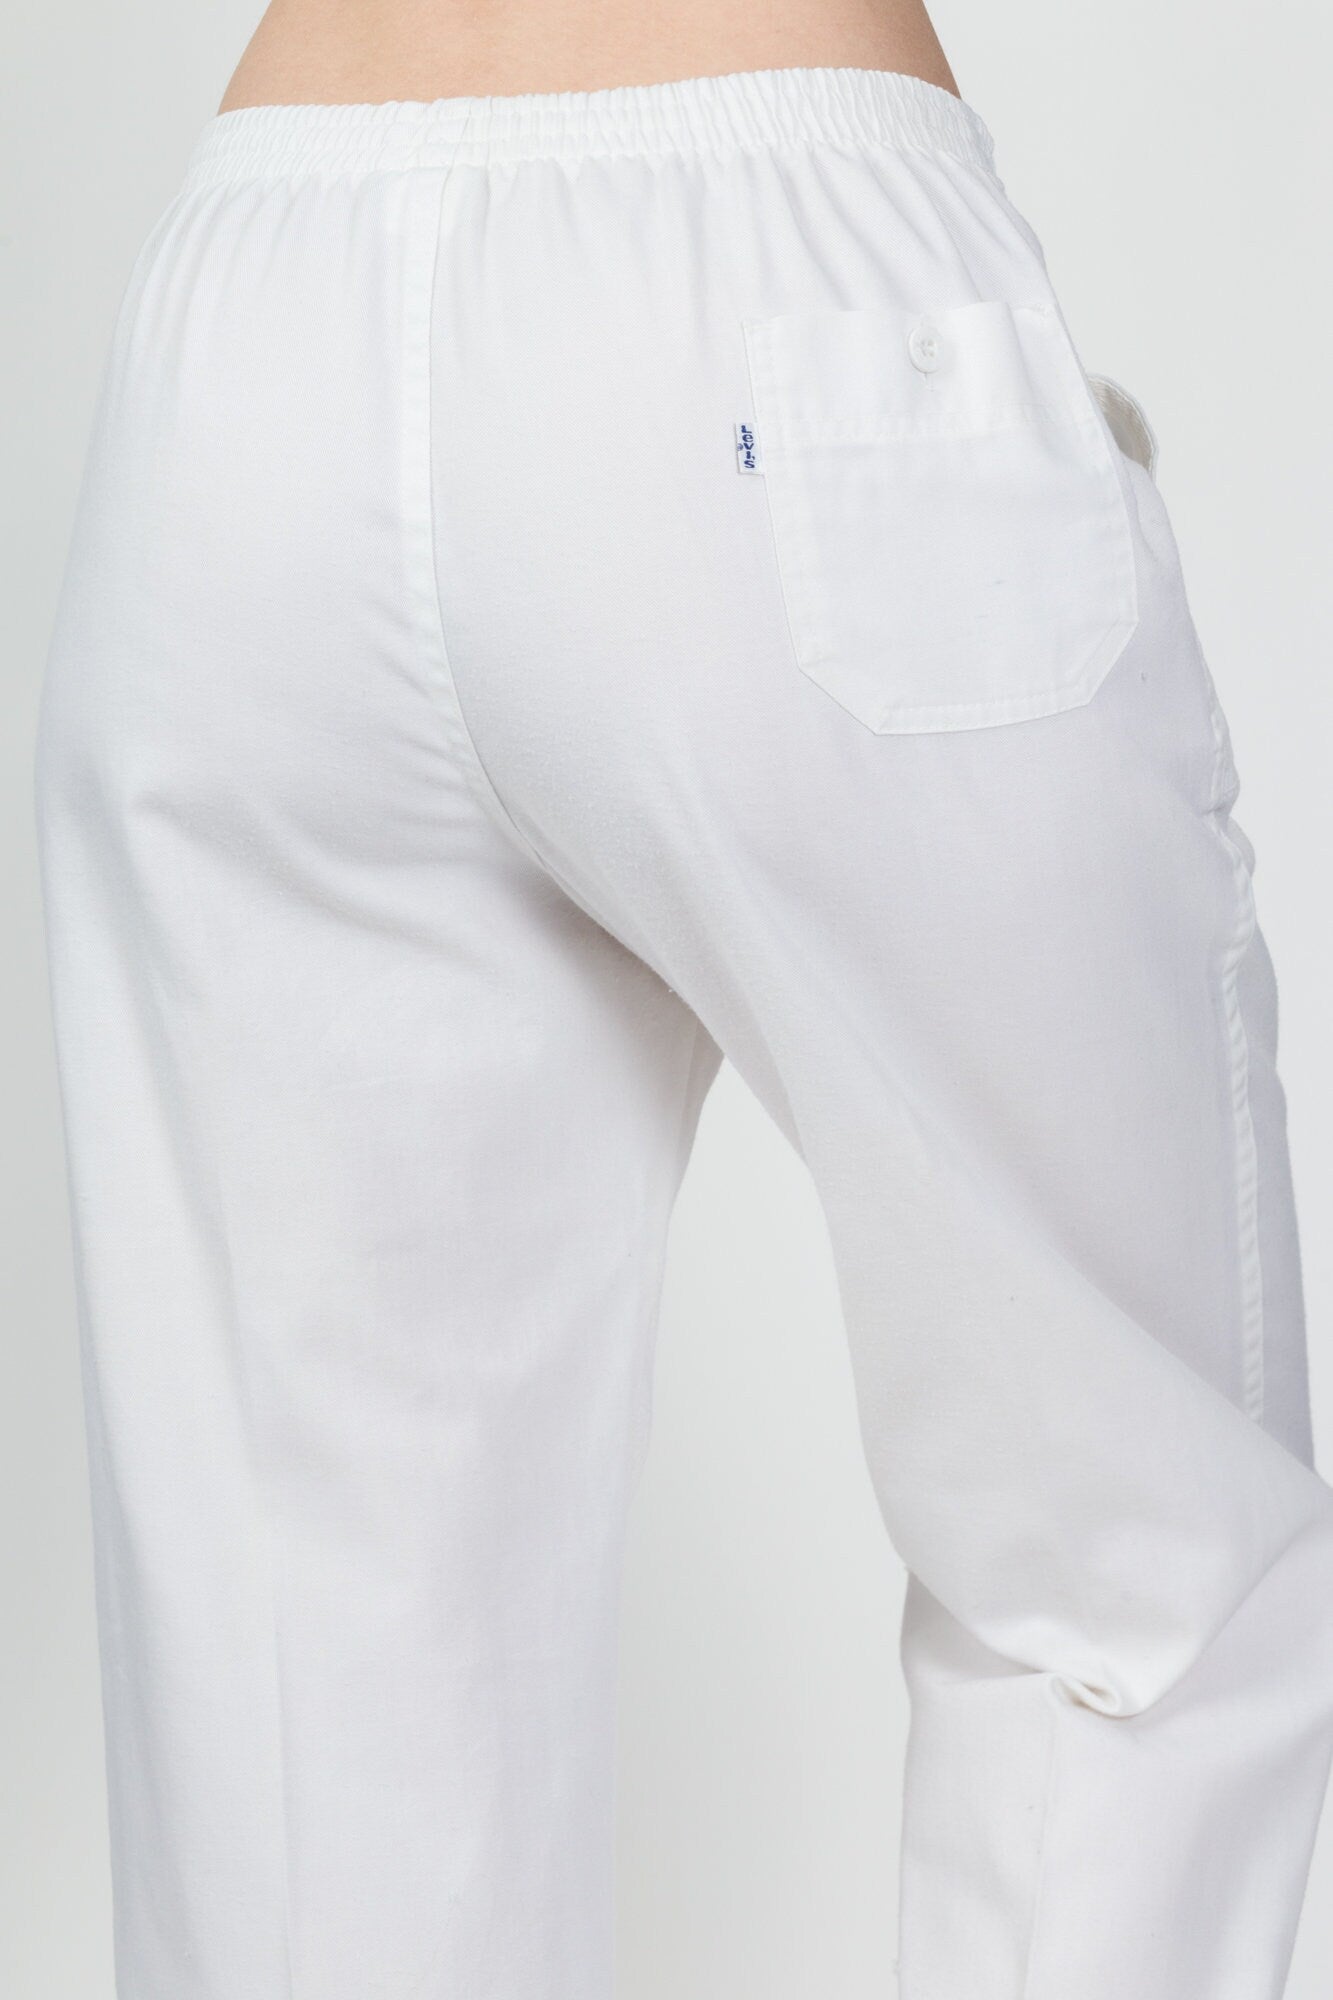 1984 Levi's LA Olympics Uniform Pants - Medium to Large – Flying Apple  Vintage